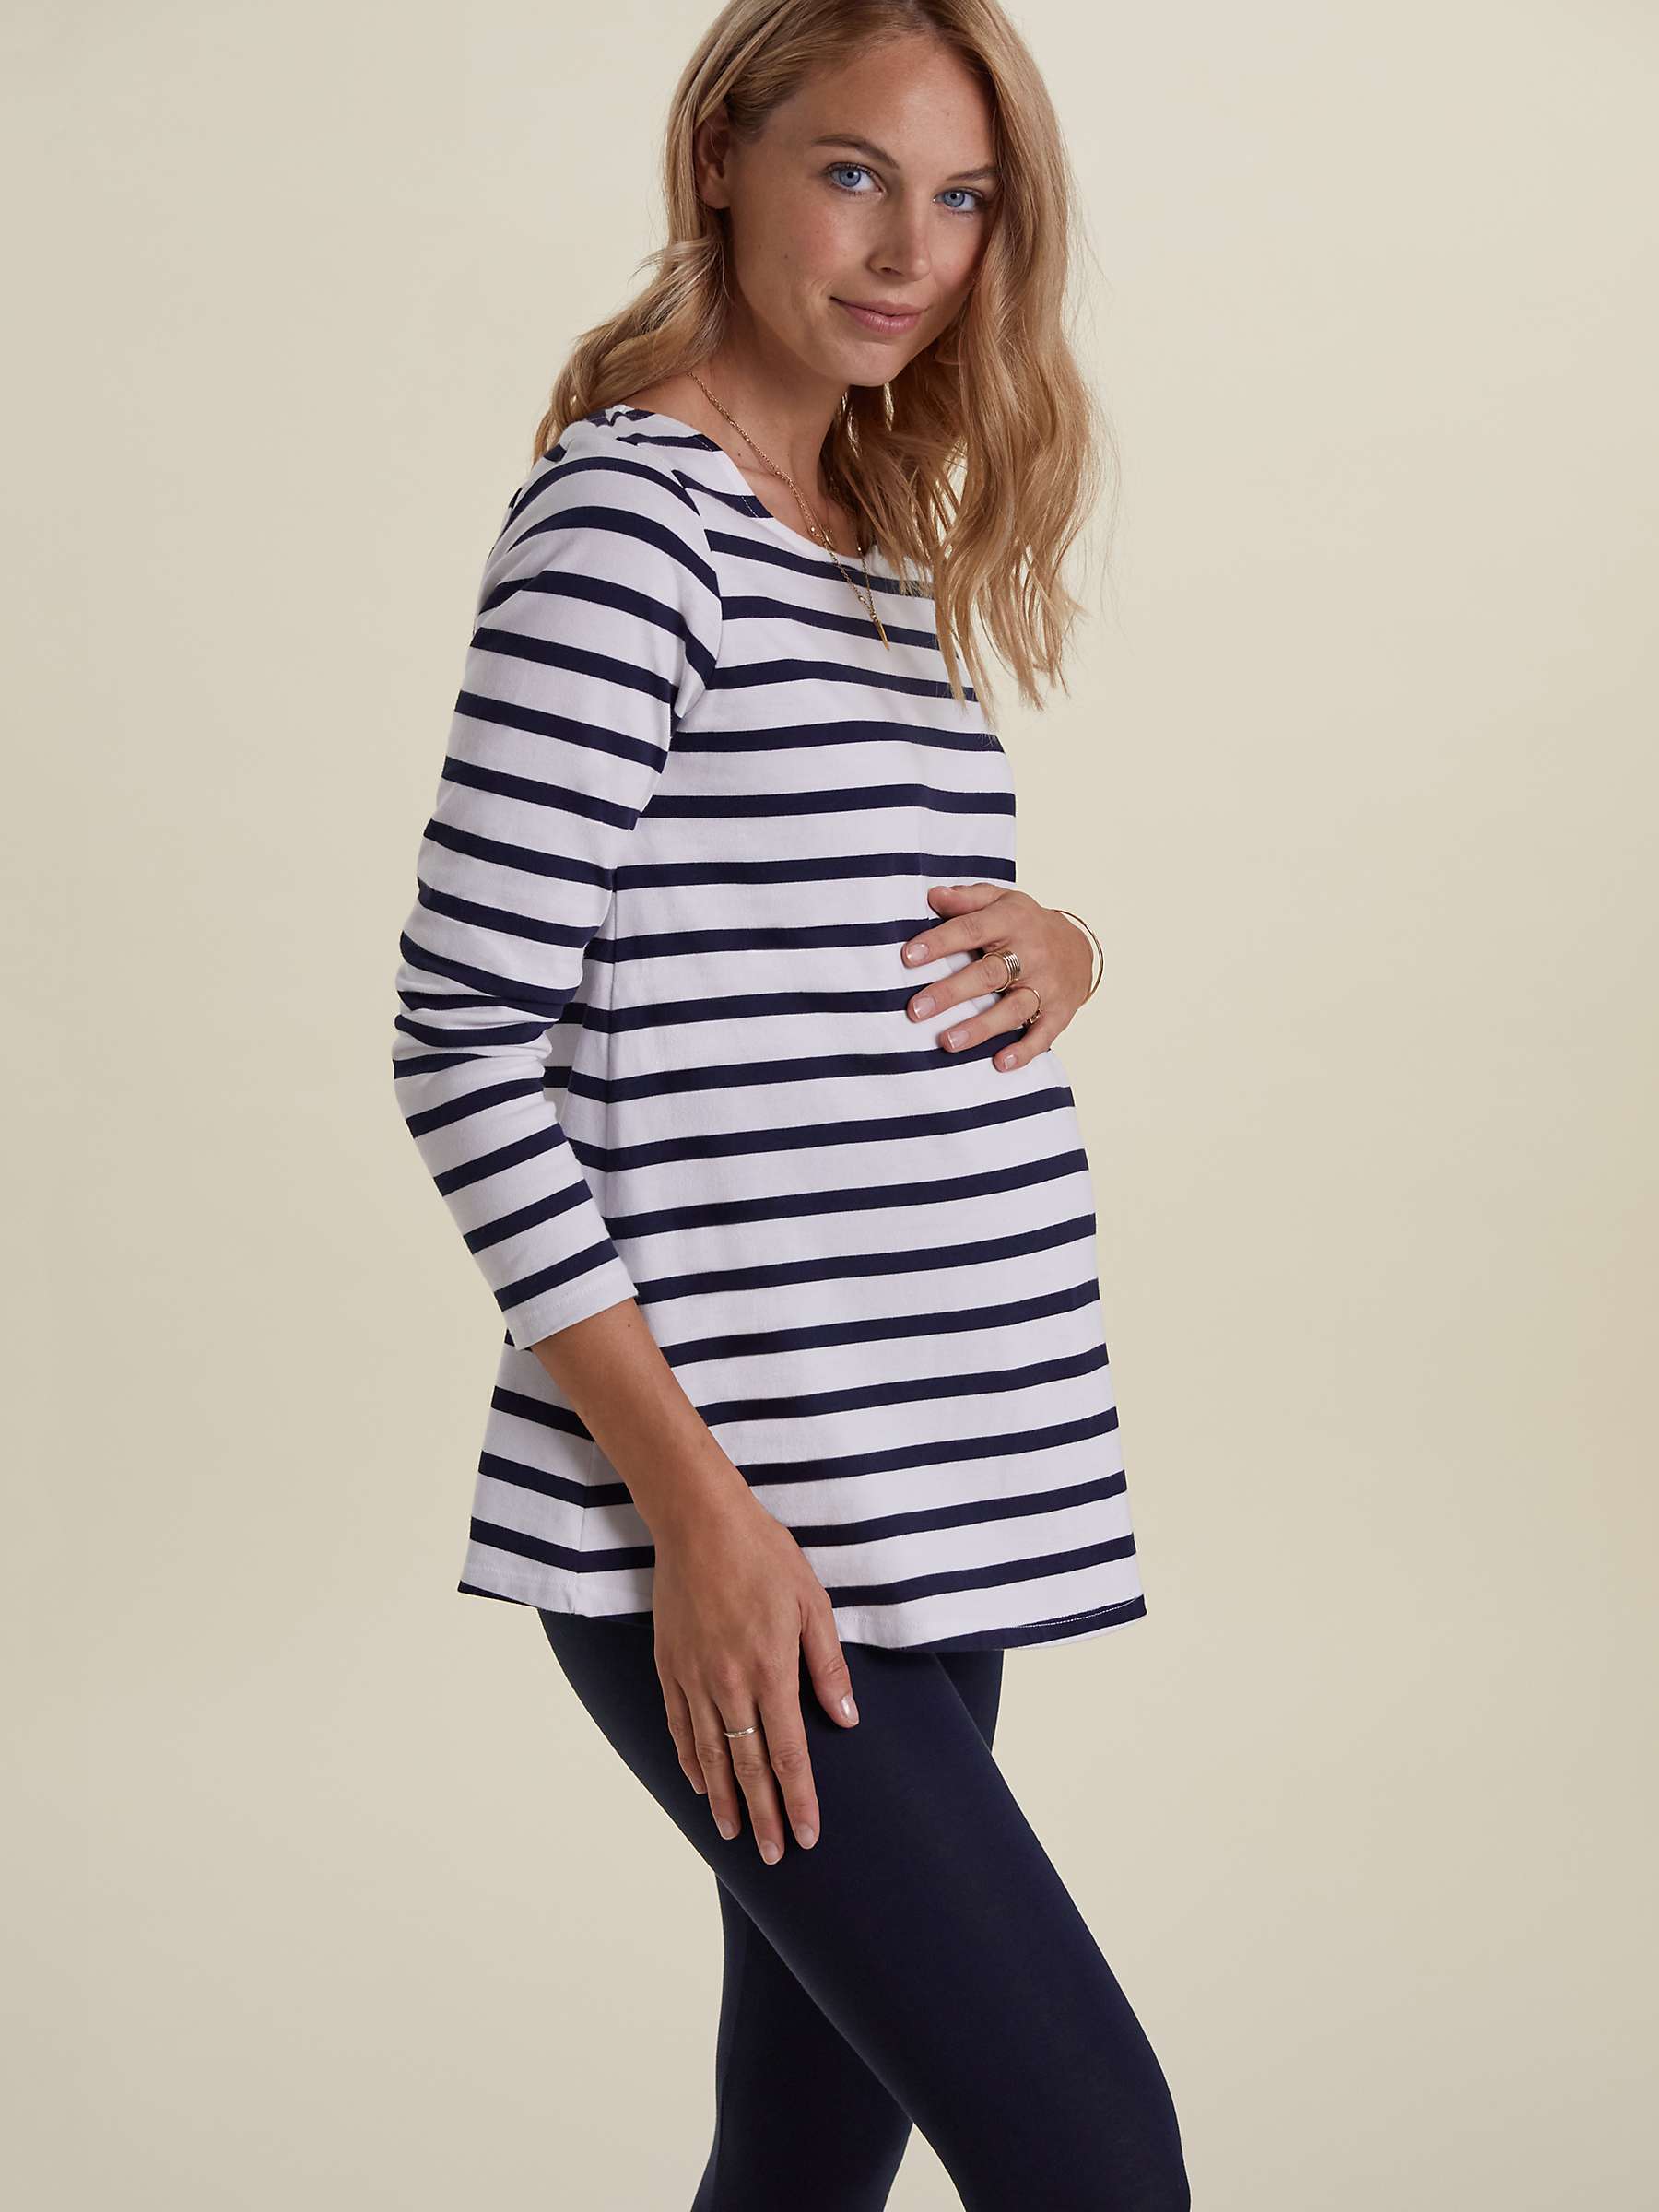 Buy Isabella Oliver Arden Breton Stripe Maternity Top Online at johnlewis.com